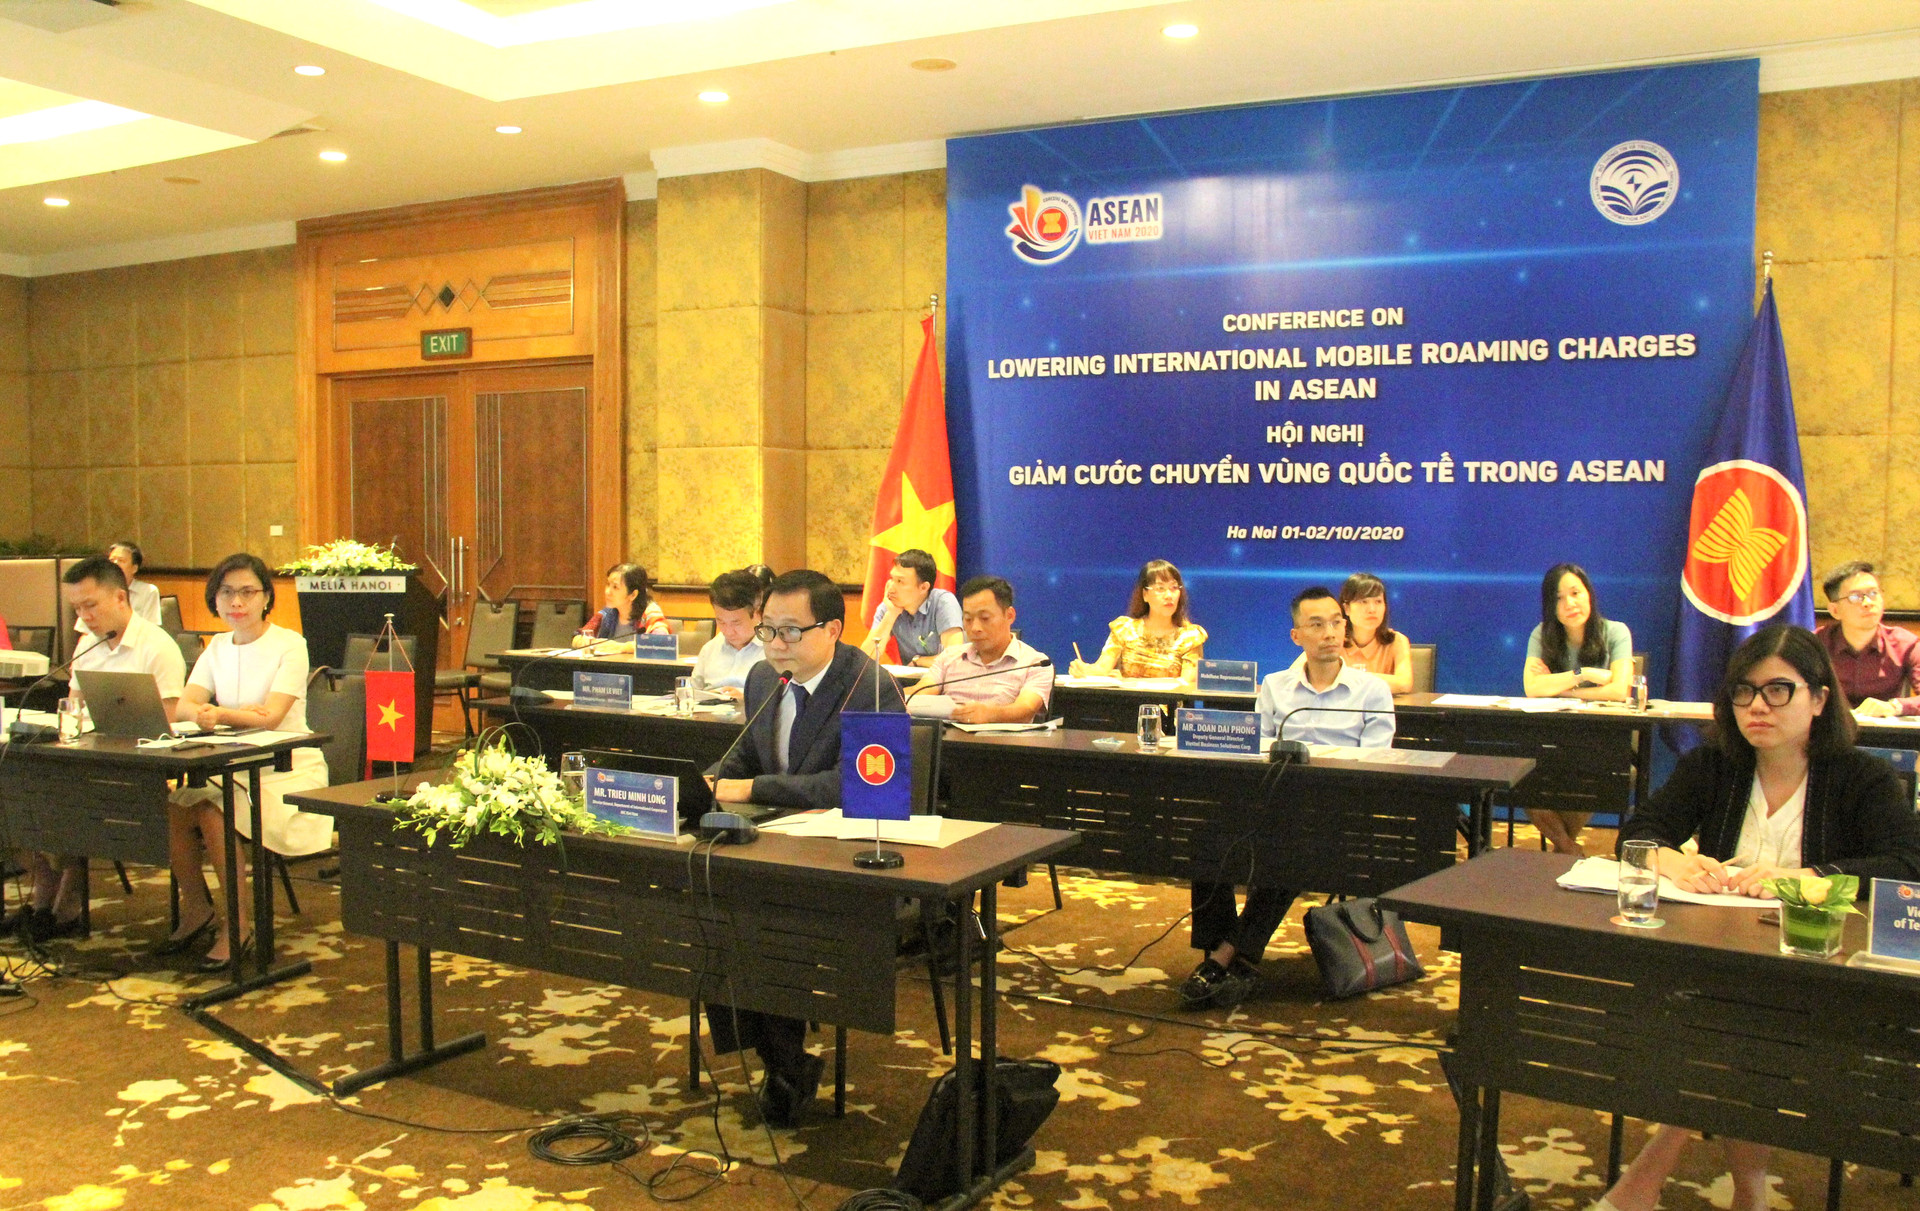 Việt Nam đề xuất sáng kiến hướng tới giảm cước chuyển vùng di động quốc tế trong ASEAN - Ảnh 4.